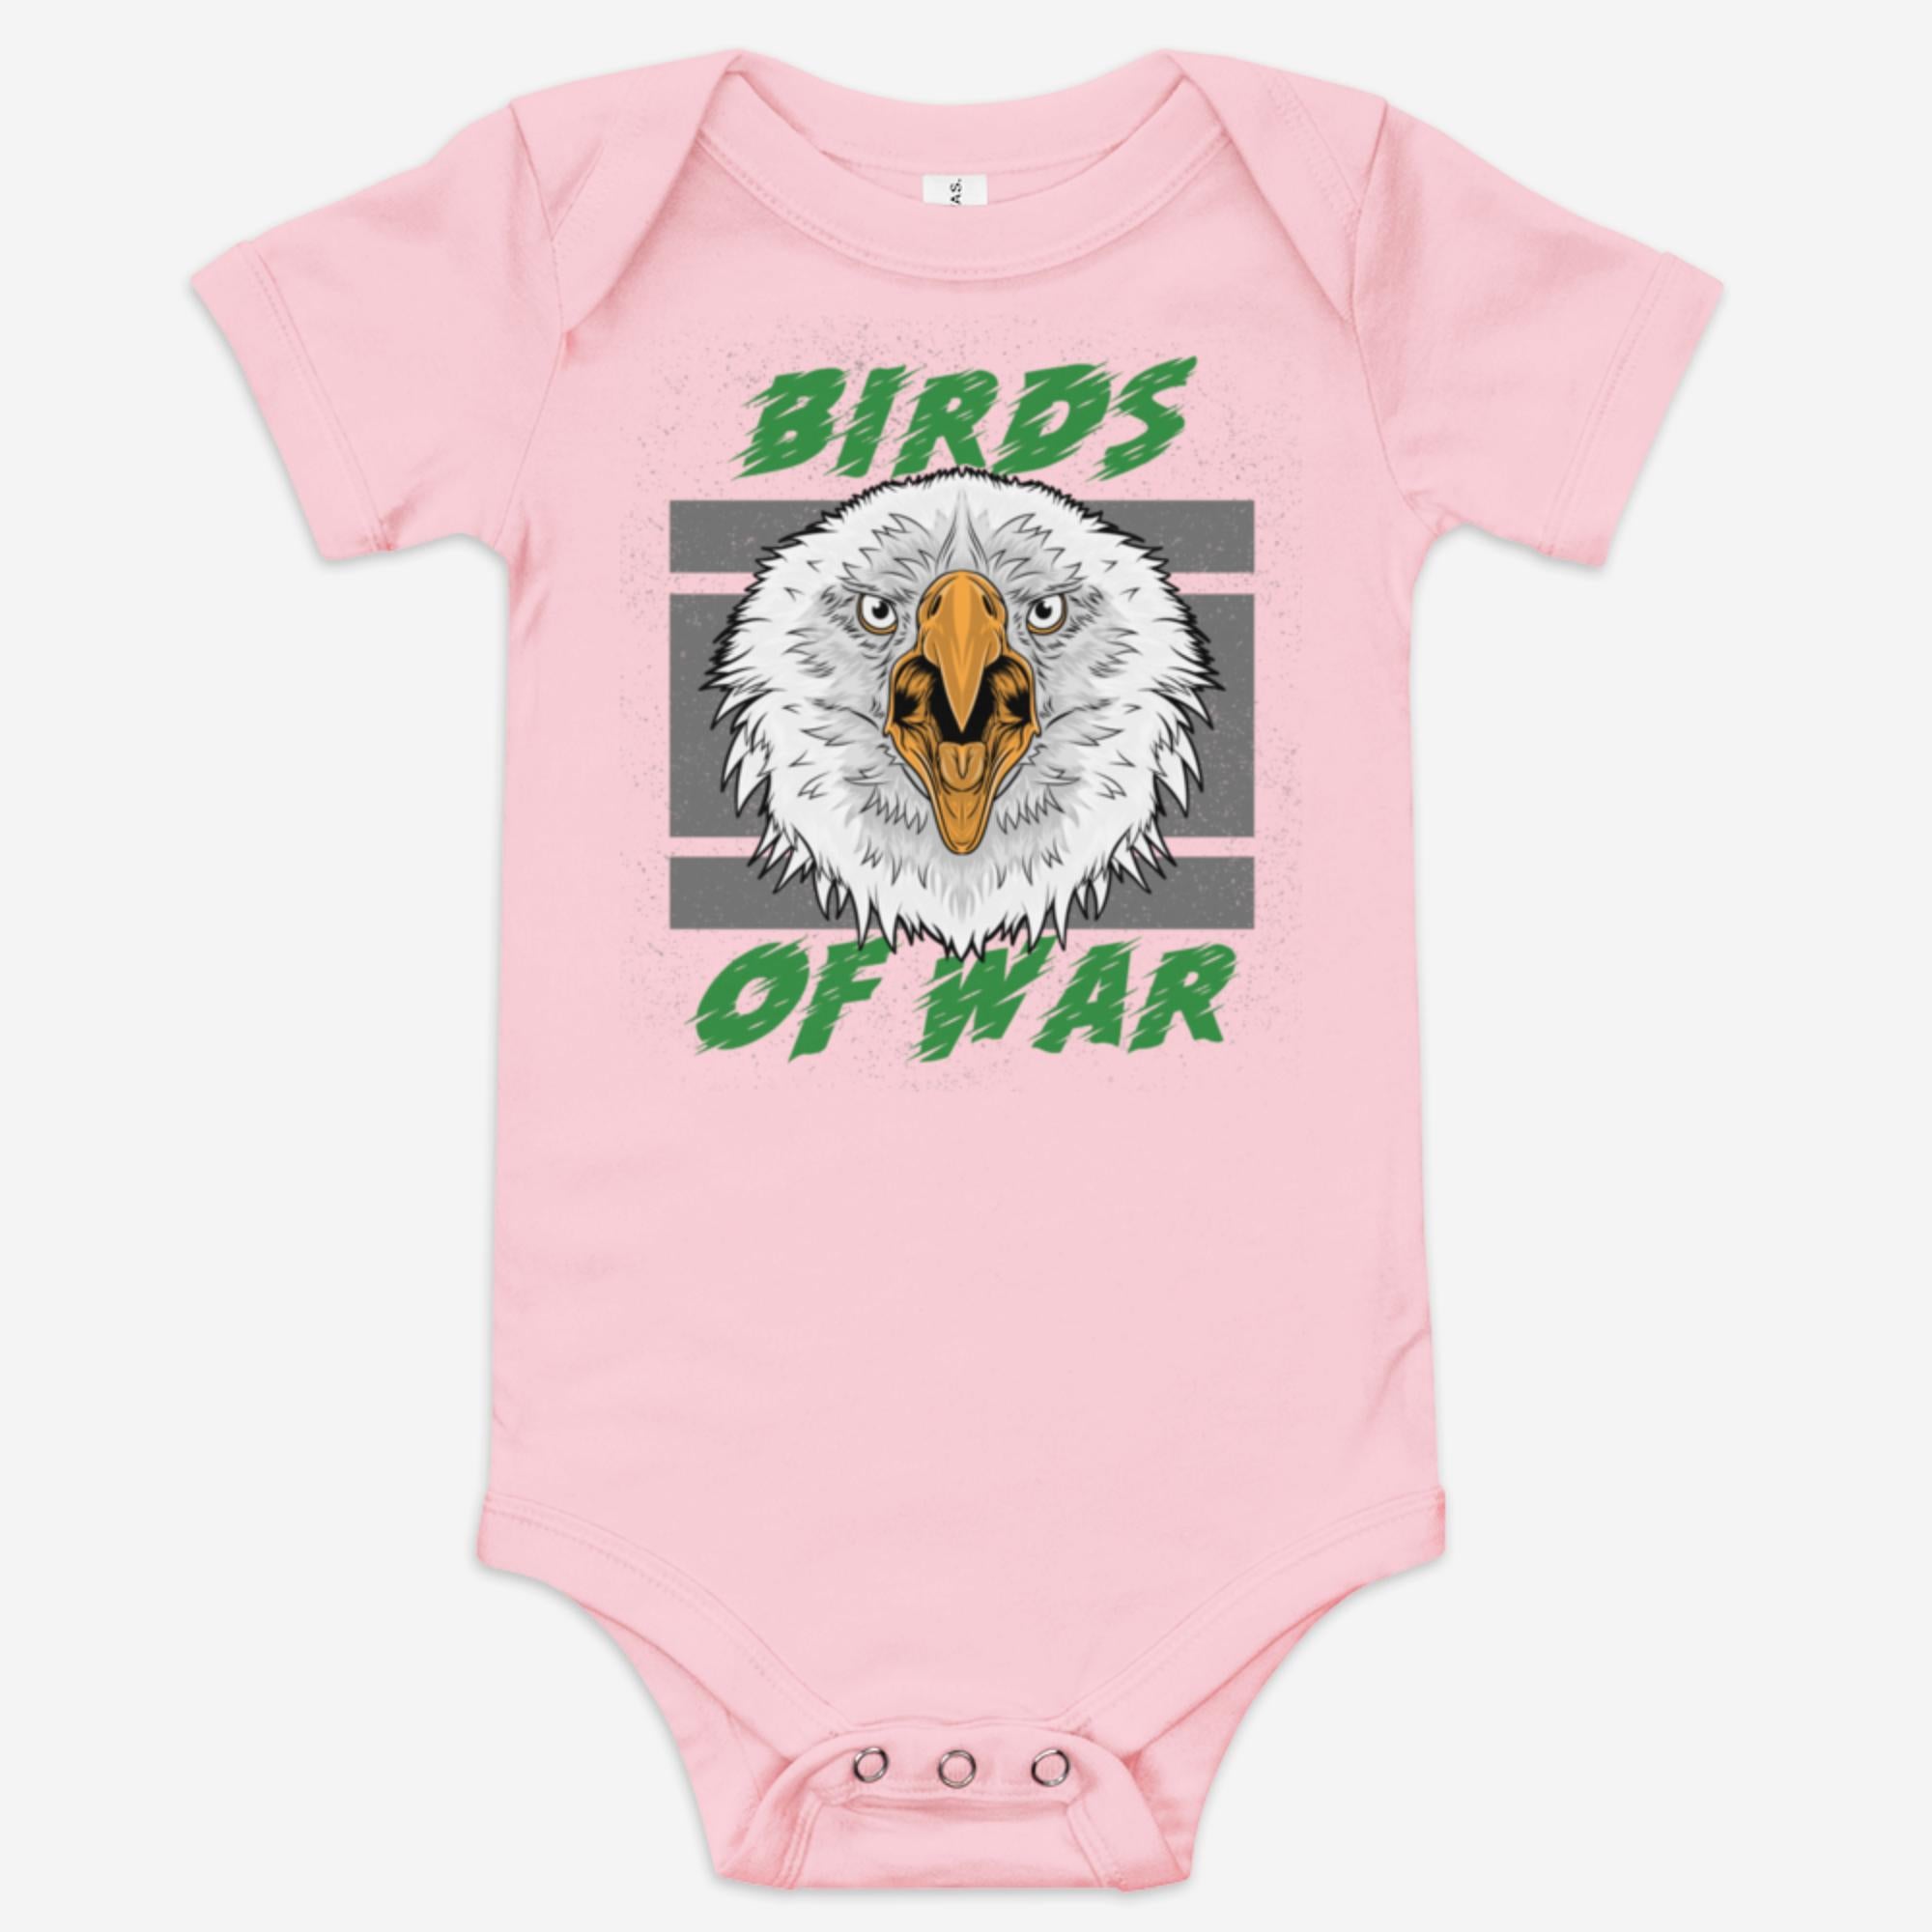 "Birds of War" Baby Onesie